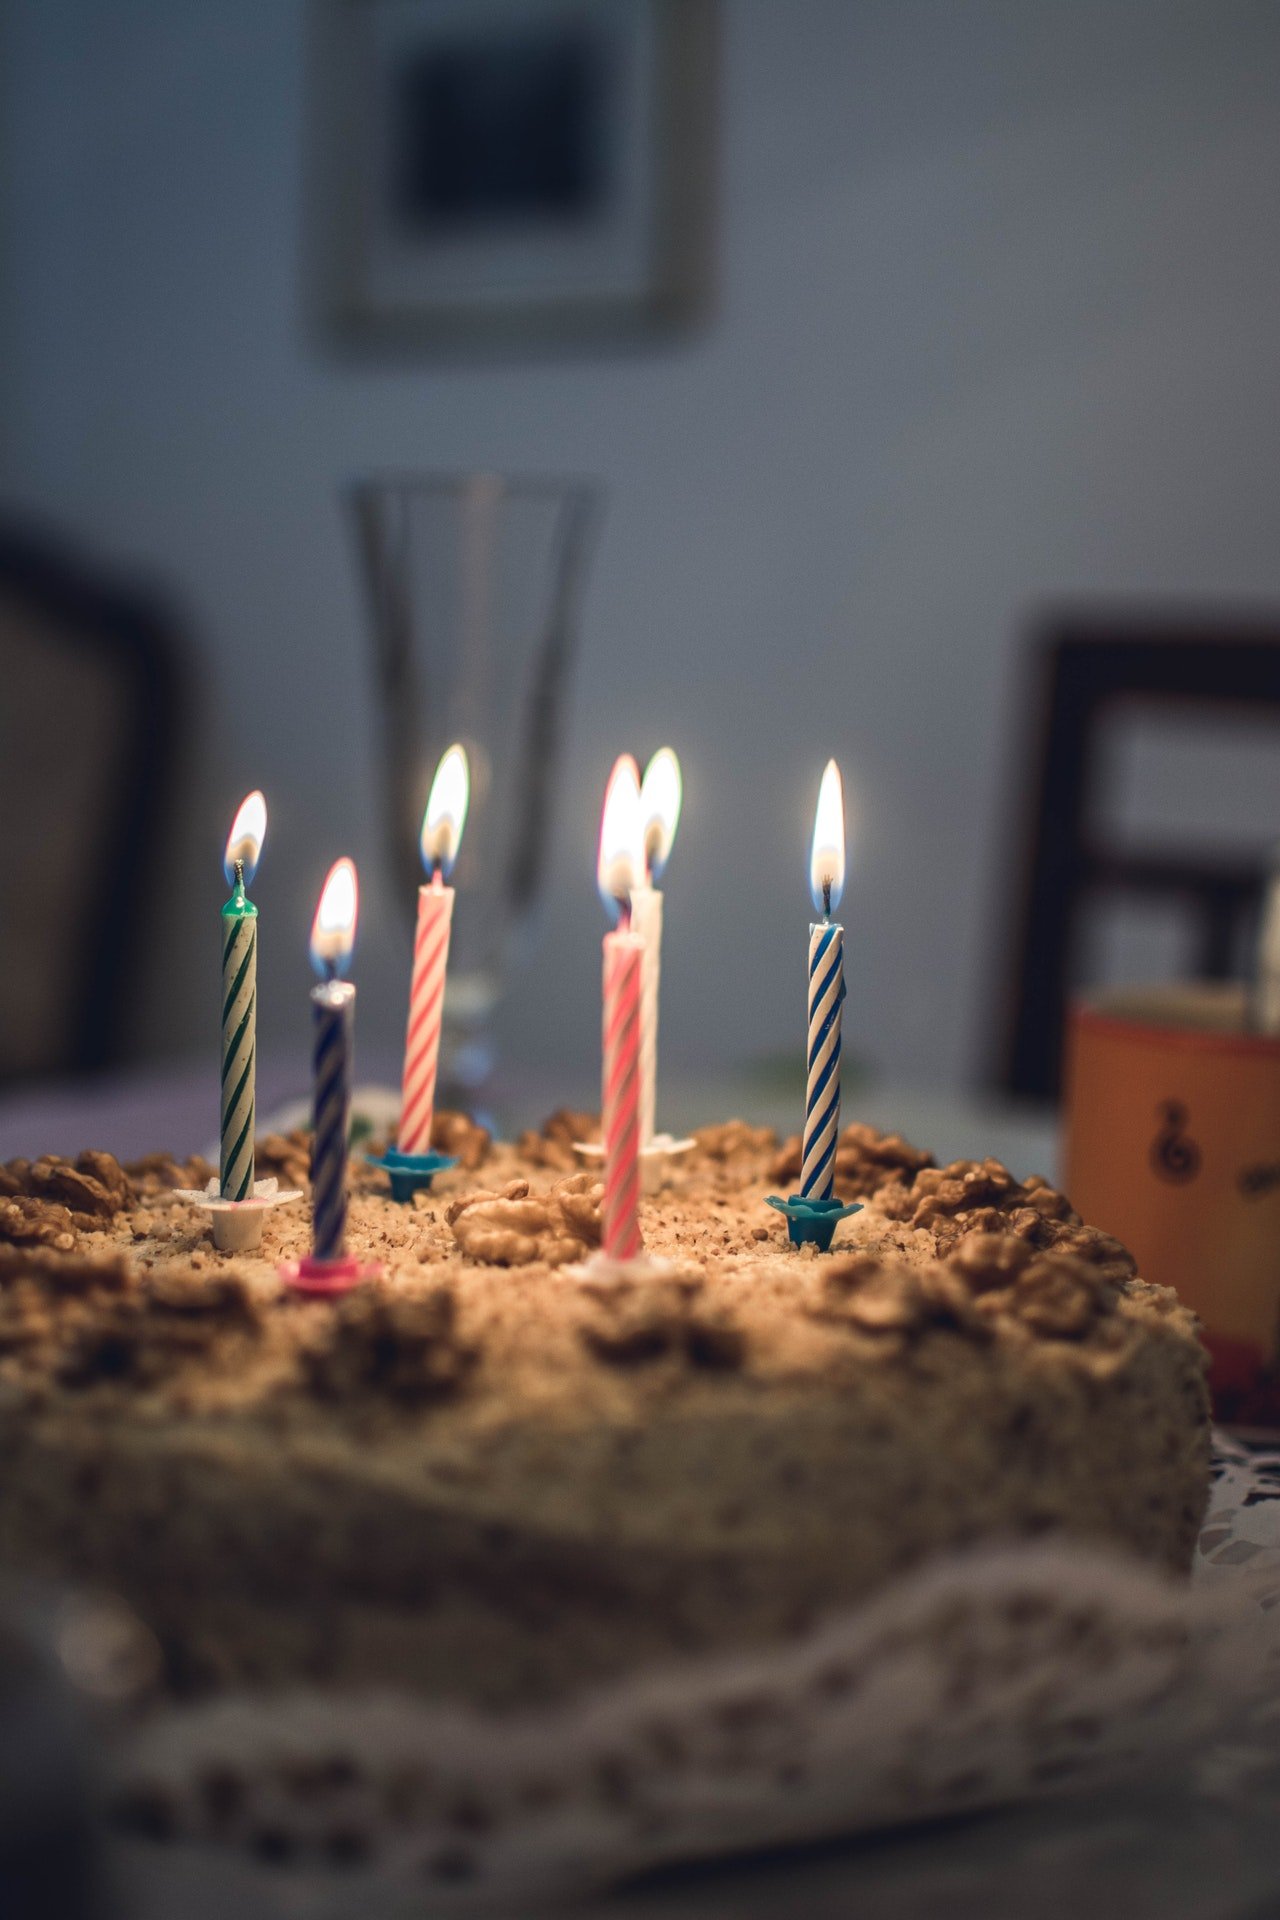 Oliver blies fröhlich die Kerzen auf seiner Geburtstagstorte aus. | Quelle: Pexels